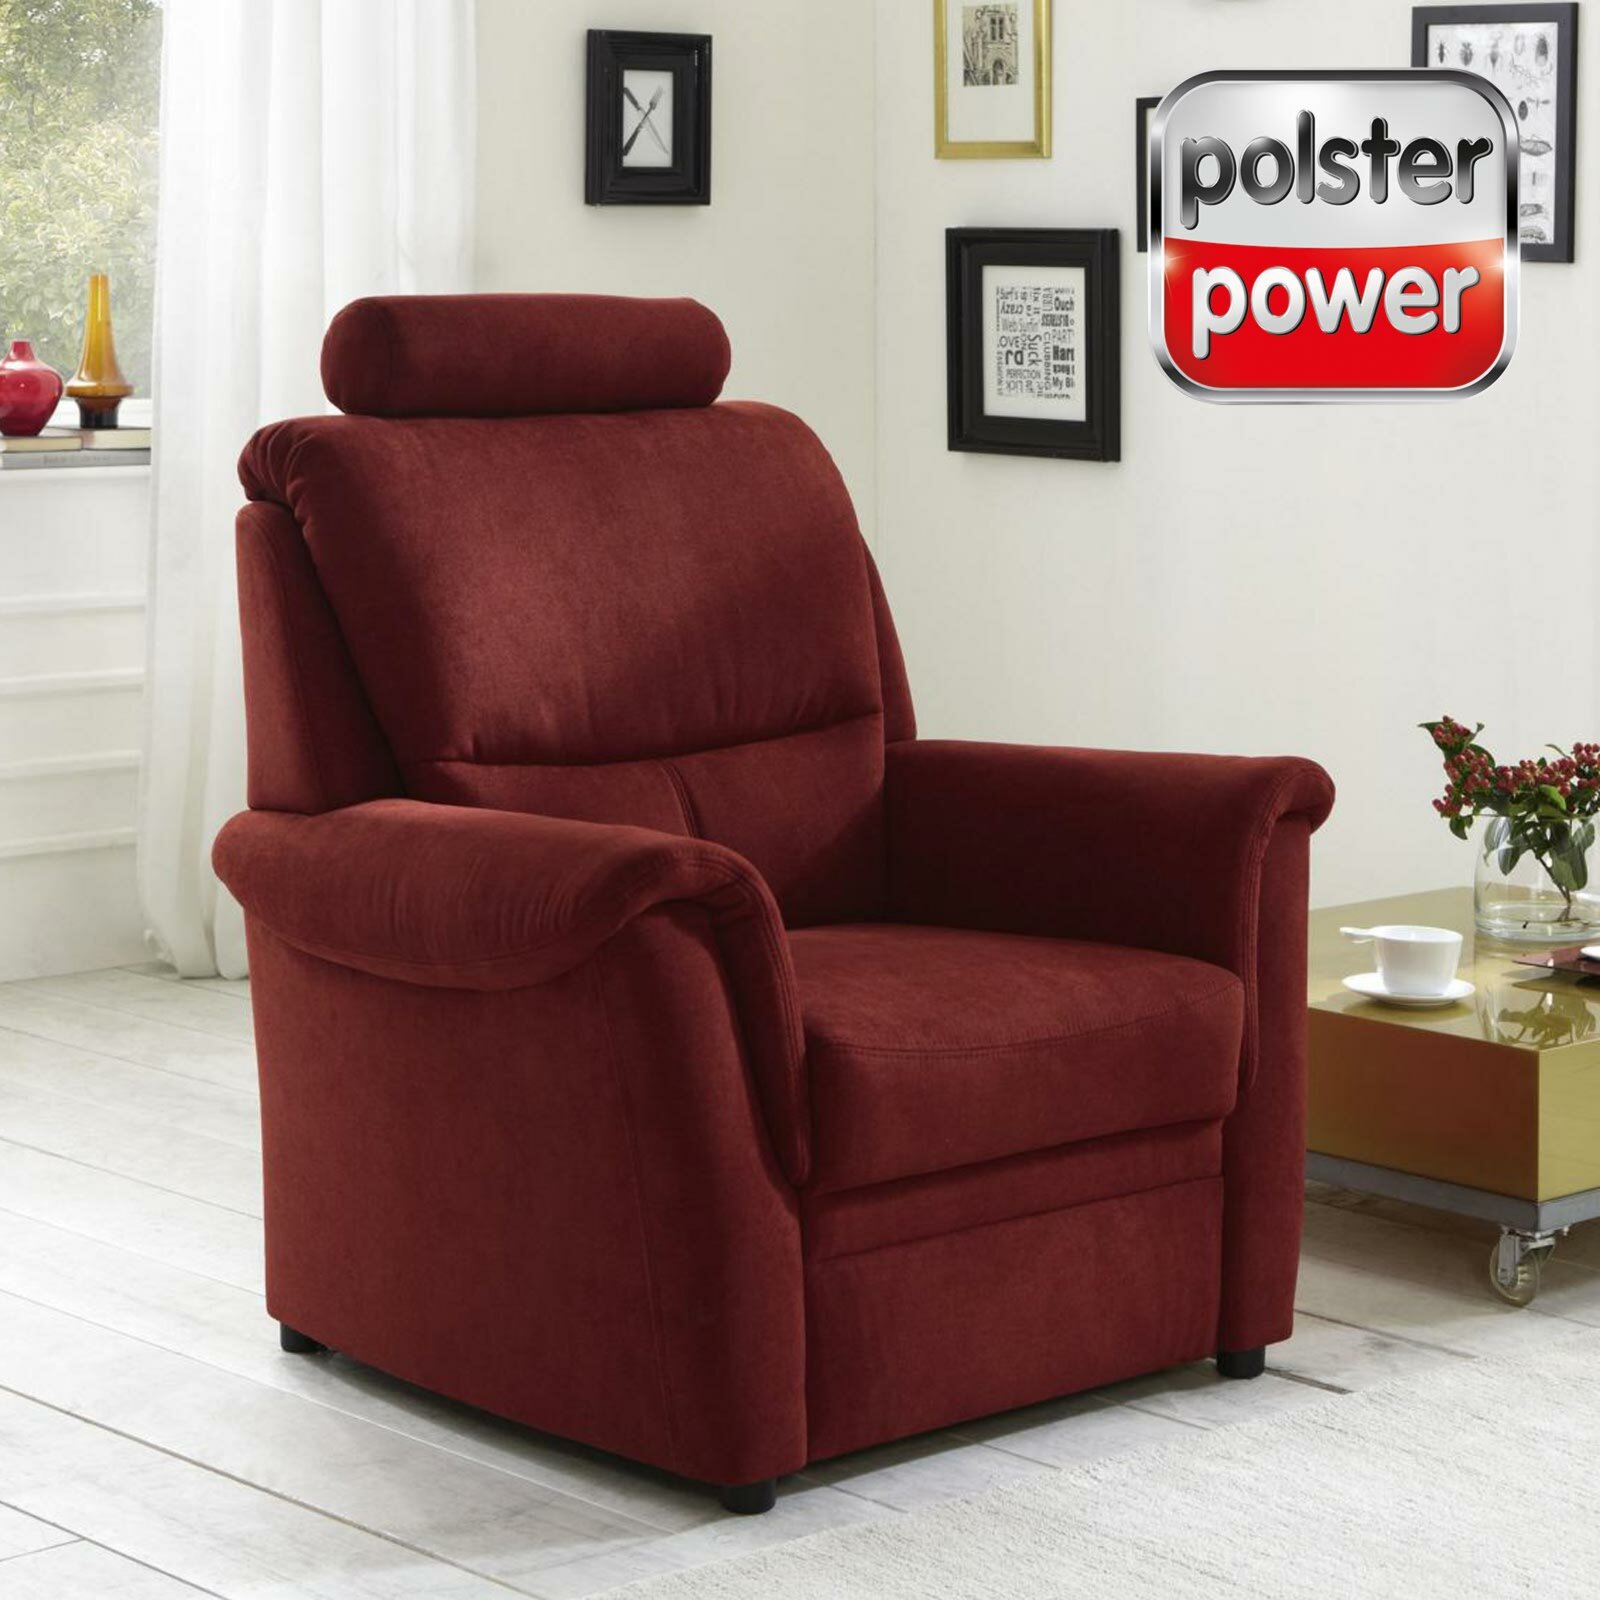 ROLLER bordeaux Online kaufen Sessel bei Microchenille polsterpower - | -